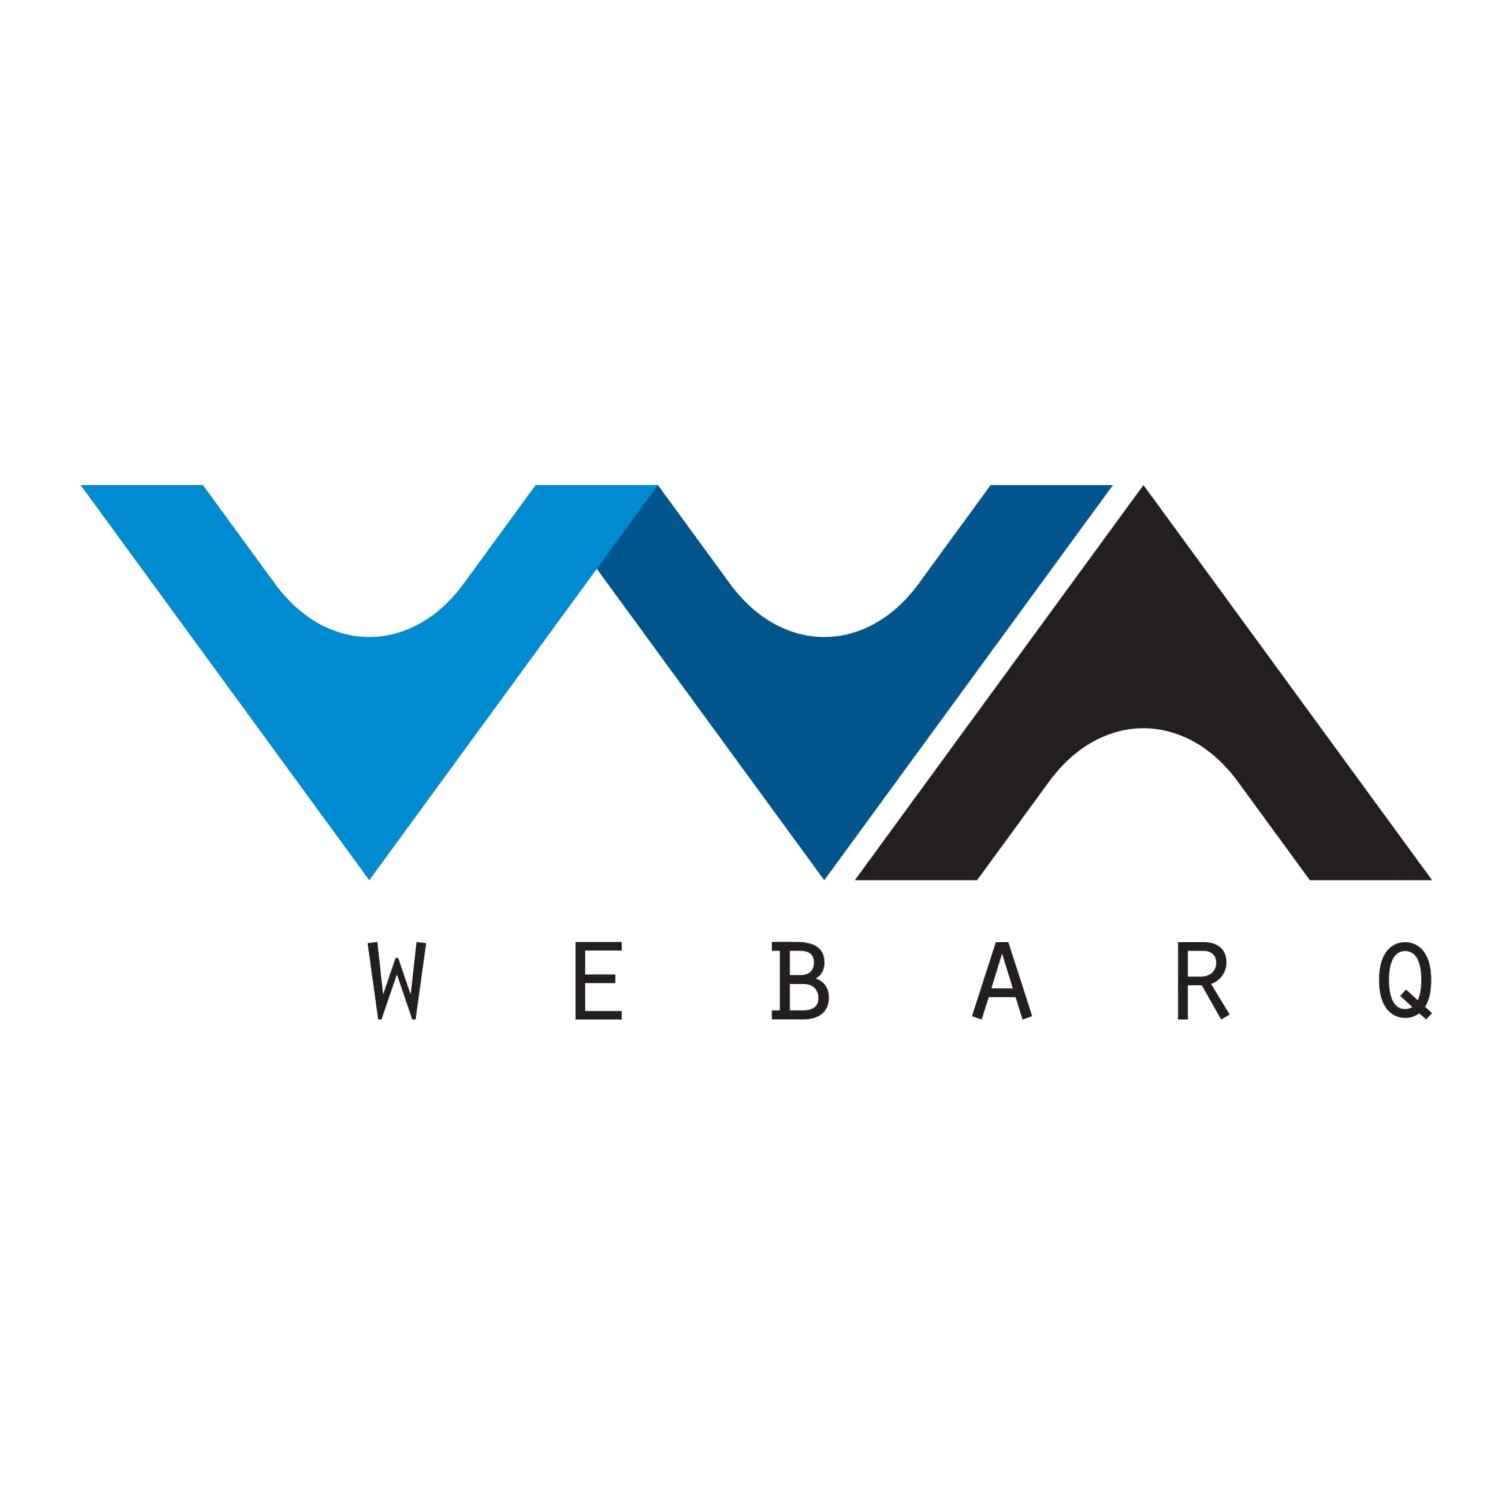 WEBARQ-1